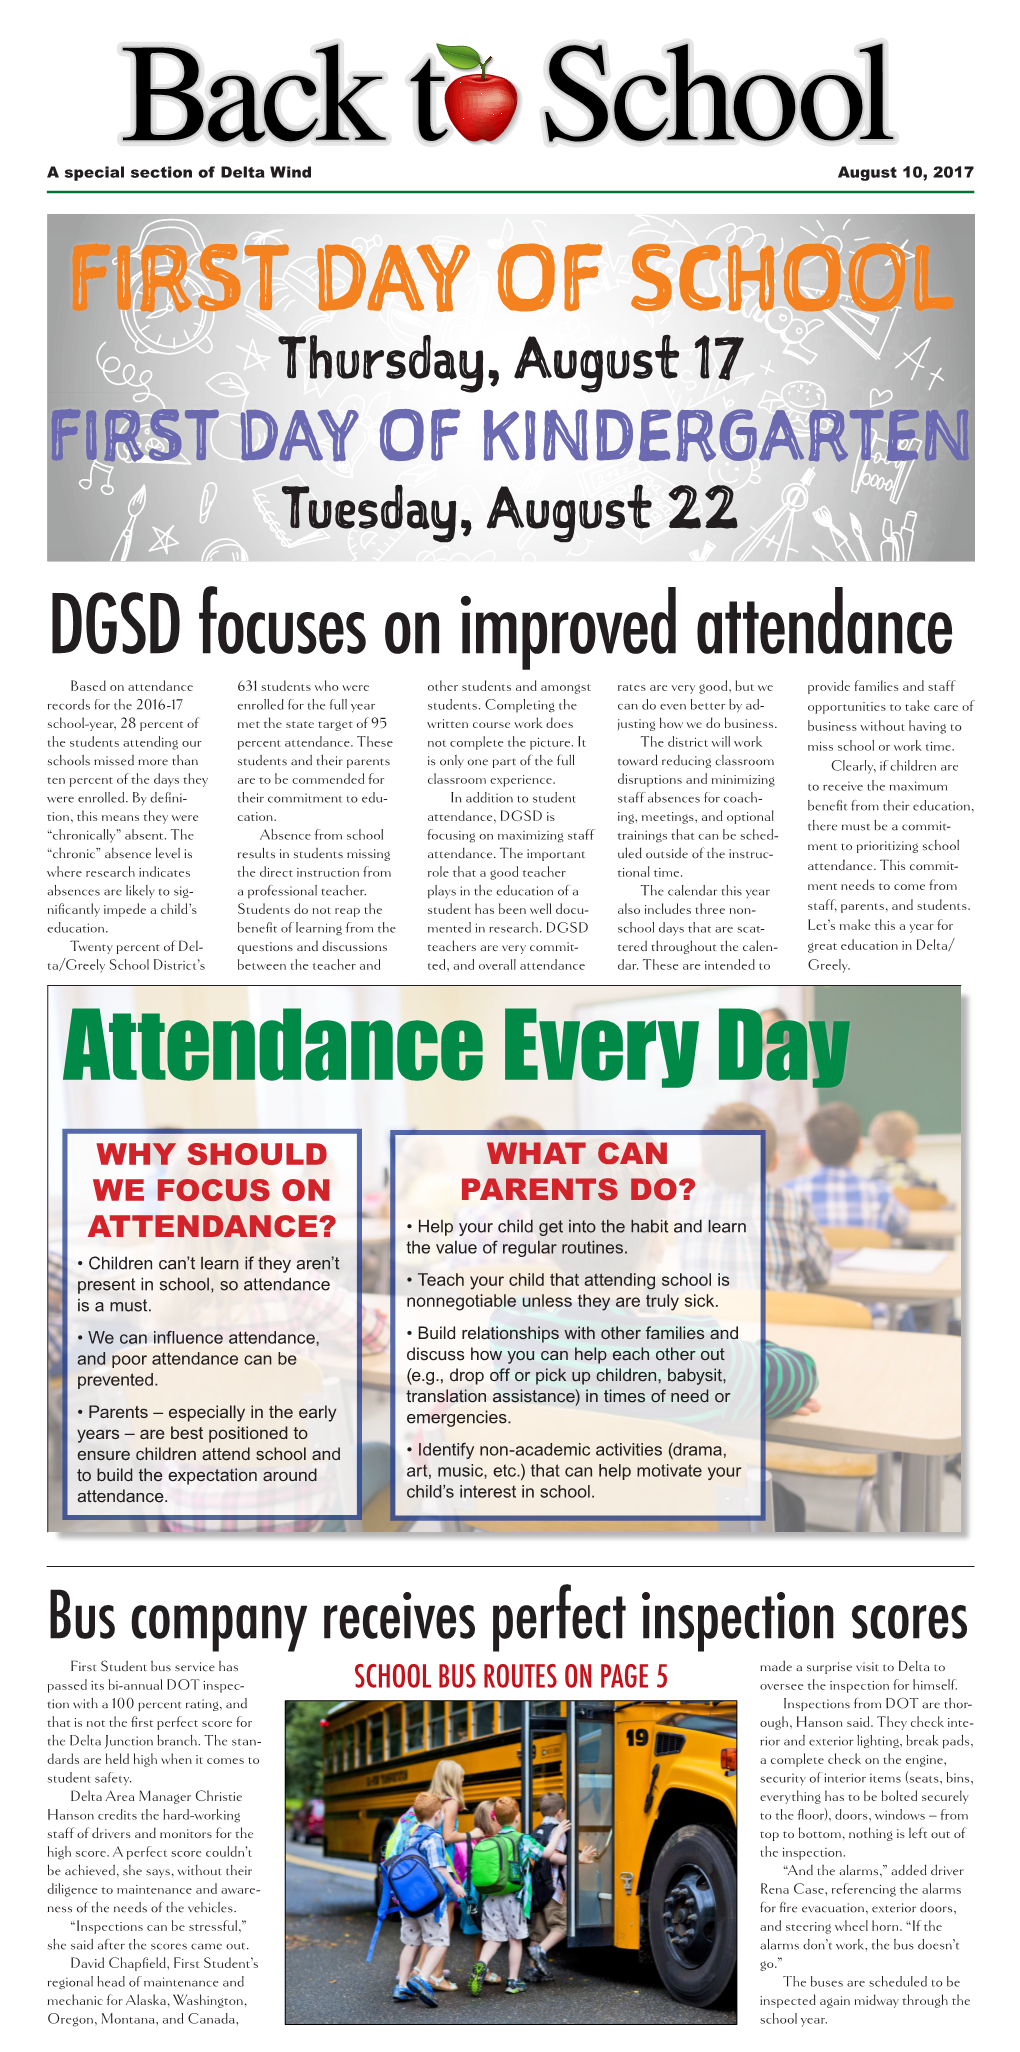 DGSD Focuses on Improved Attendance